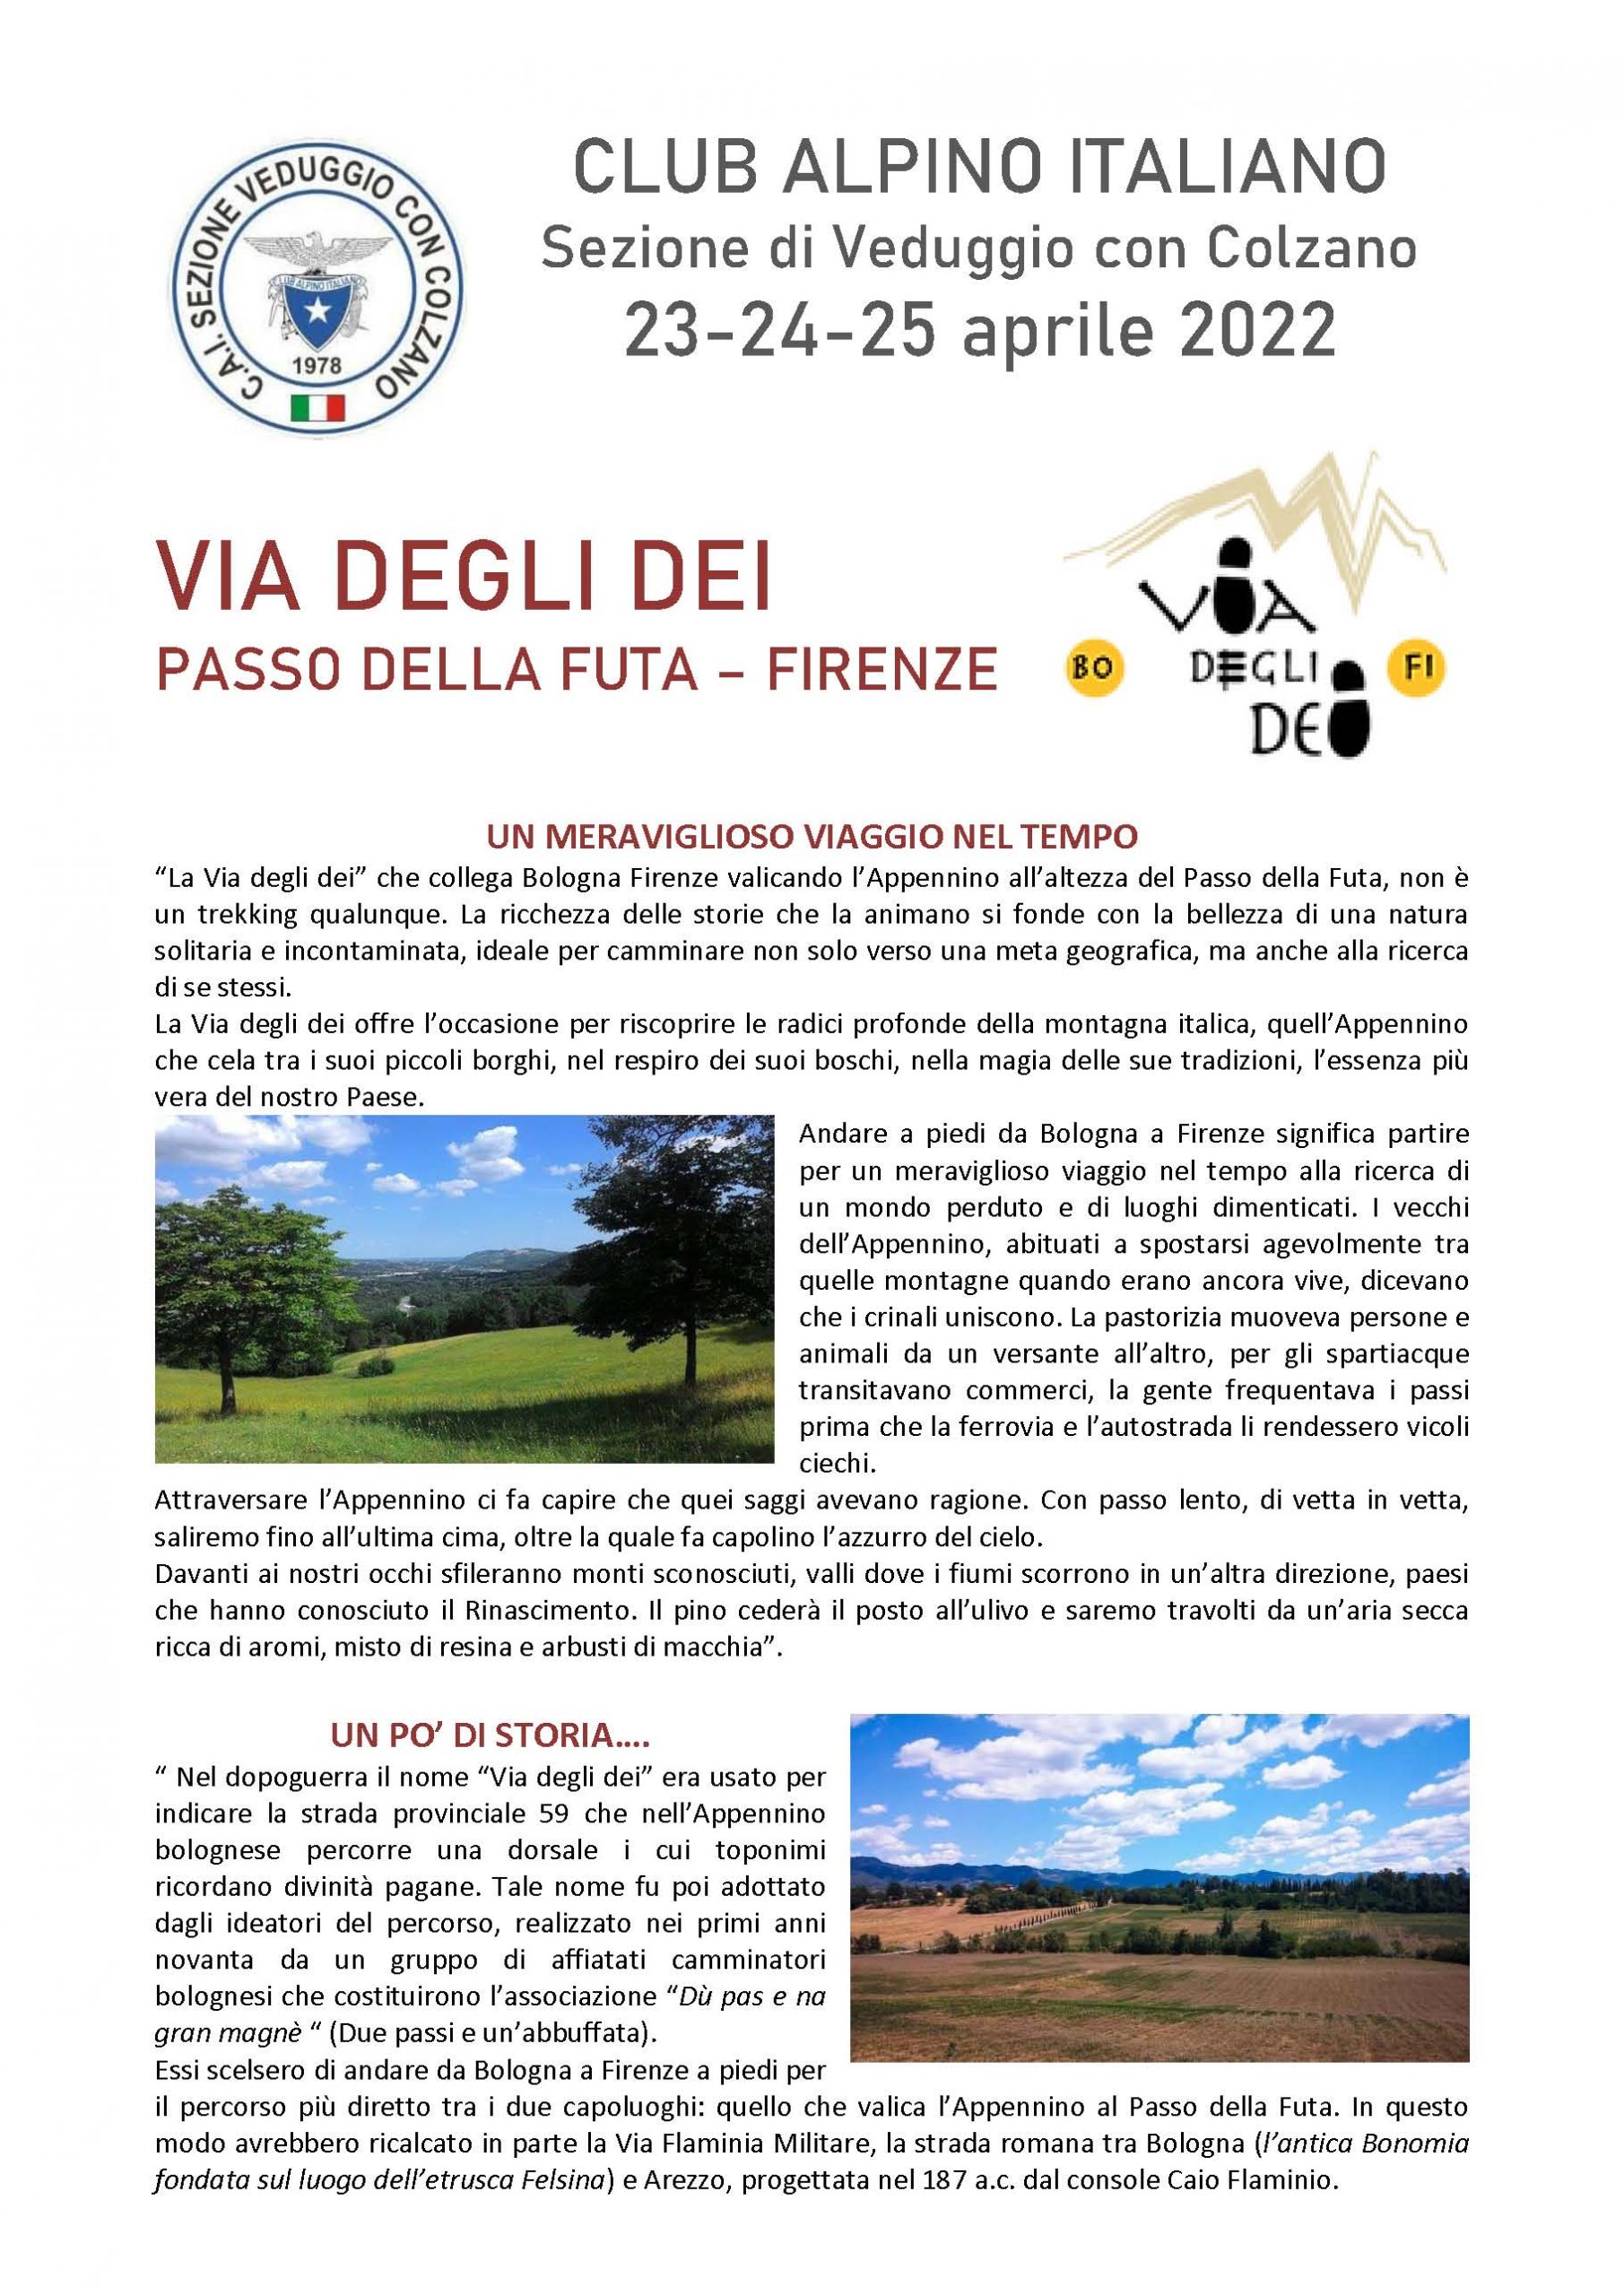 Piccola guida alla Via degli dei – Passo della Futa/Firenze – 23/24/25 aprile 2022